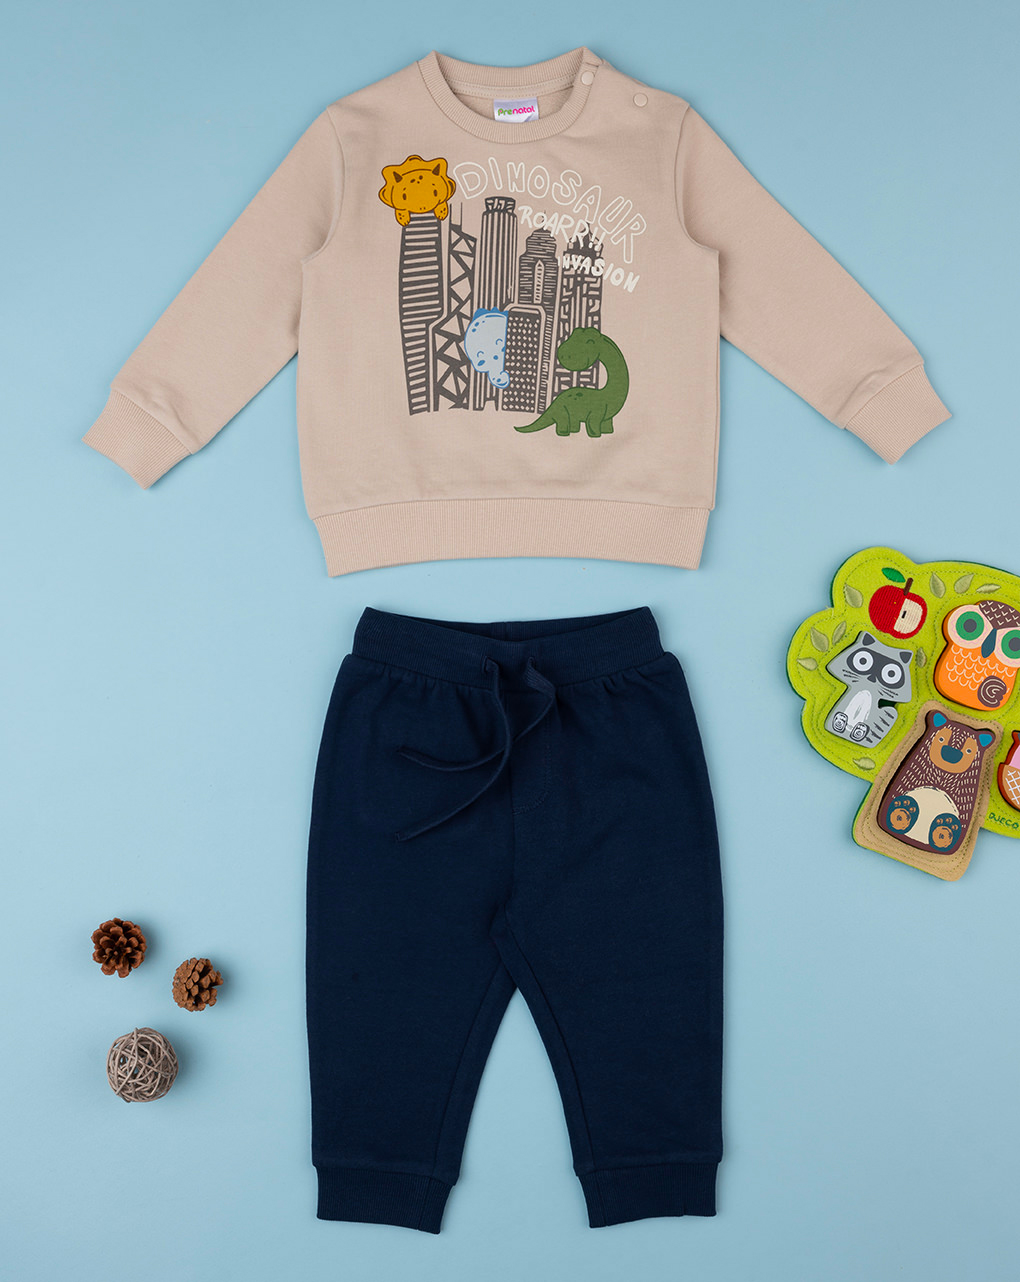 βρεφικό σετ μπλούζα φούτερ και φόρμα δεινόσαυροι για αγόρι - Prénatal